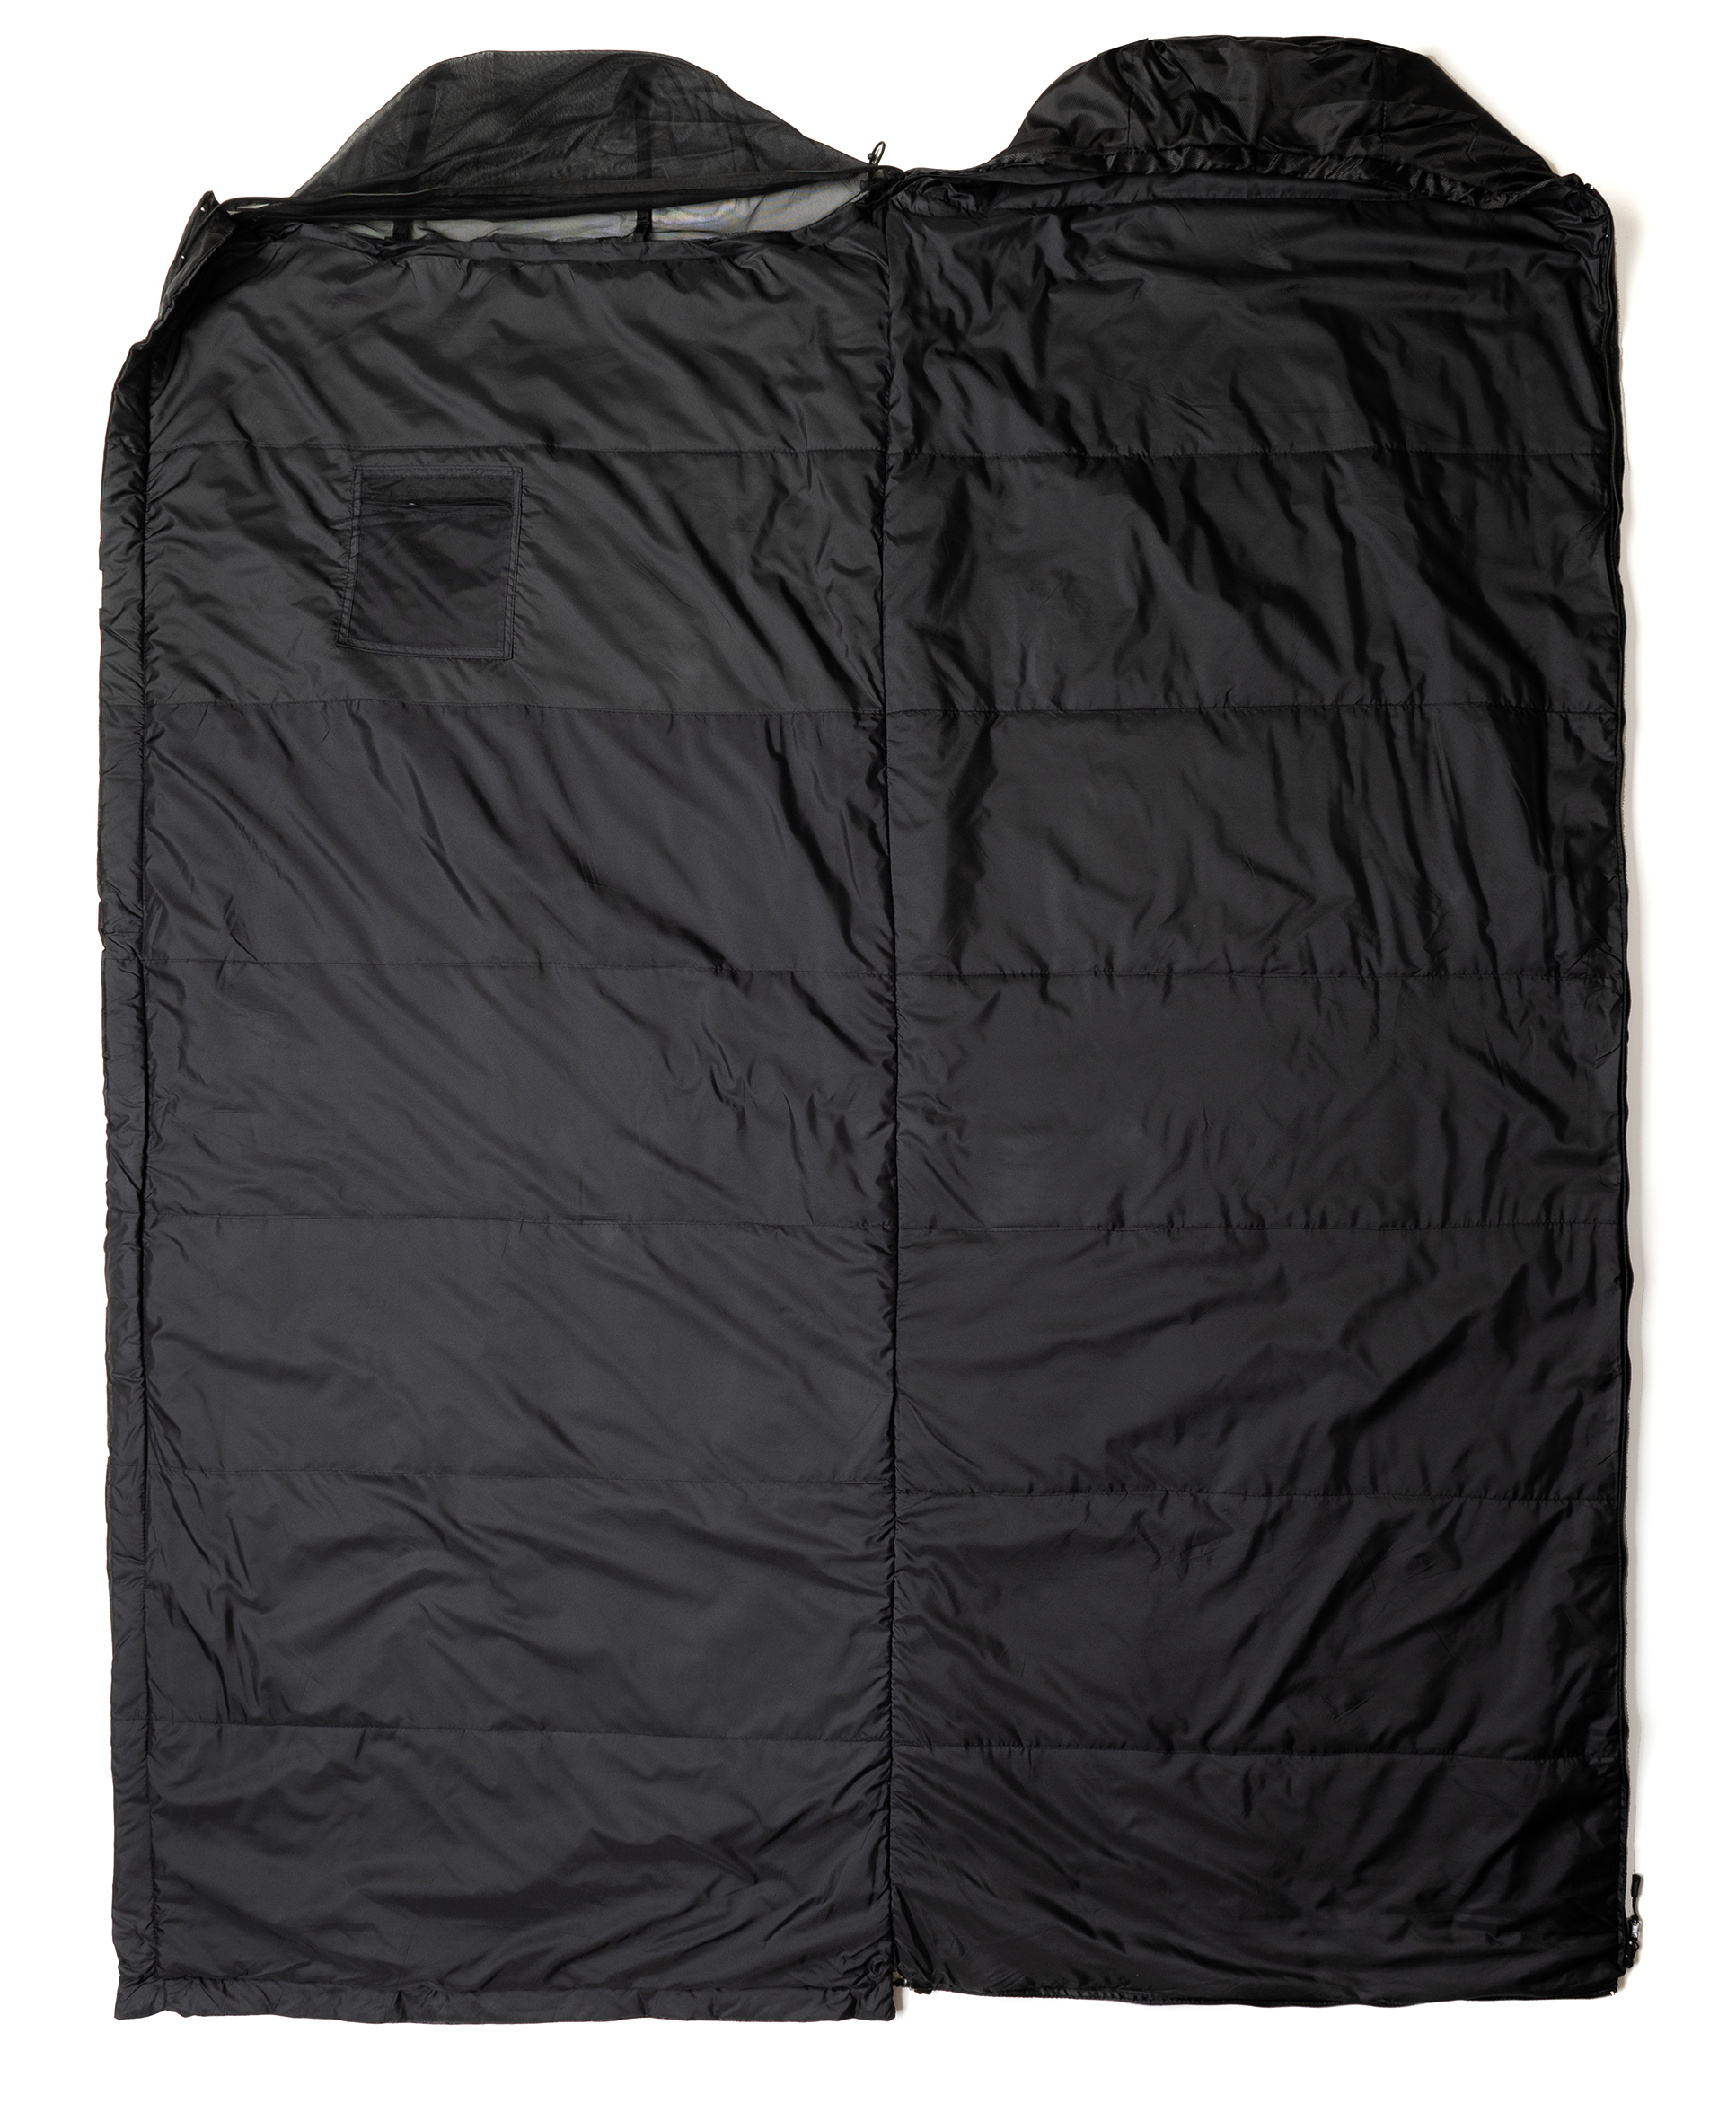 SnugPak Jungle Bag Schlafsack mit Reißverschluss auf der linken Seite 